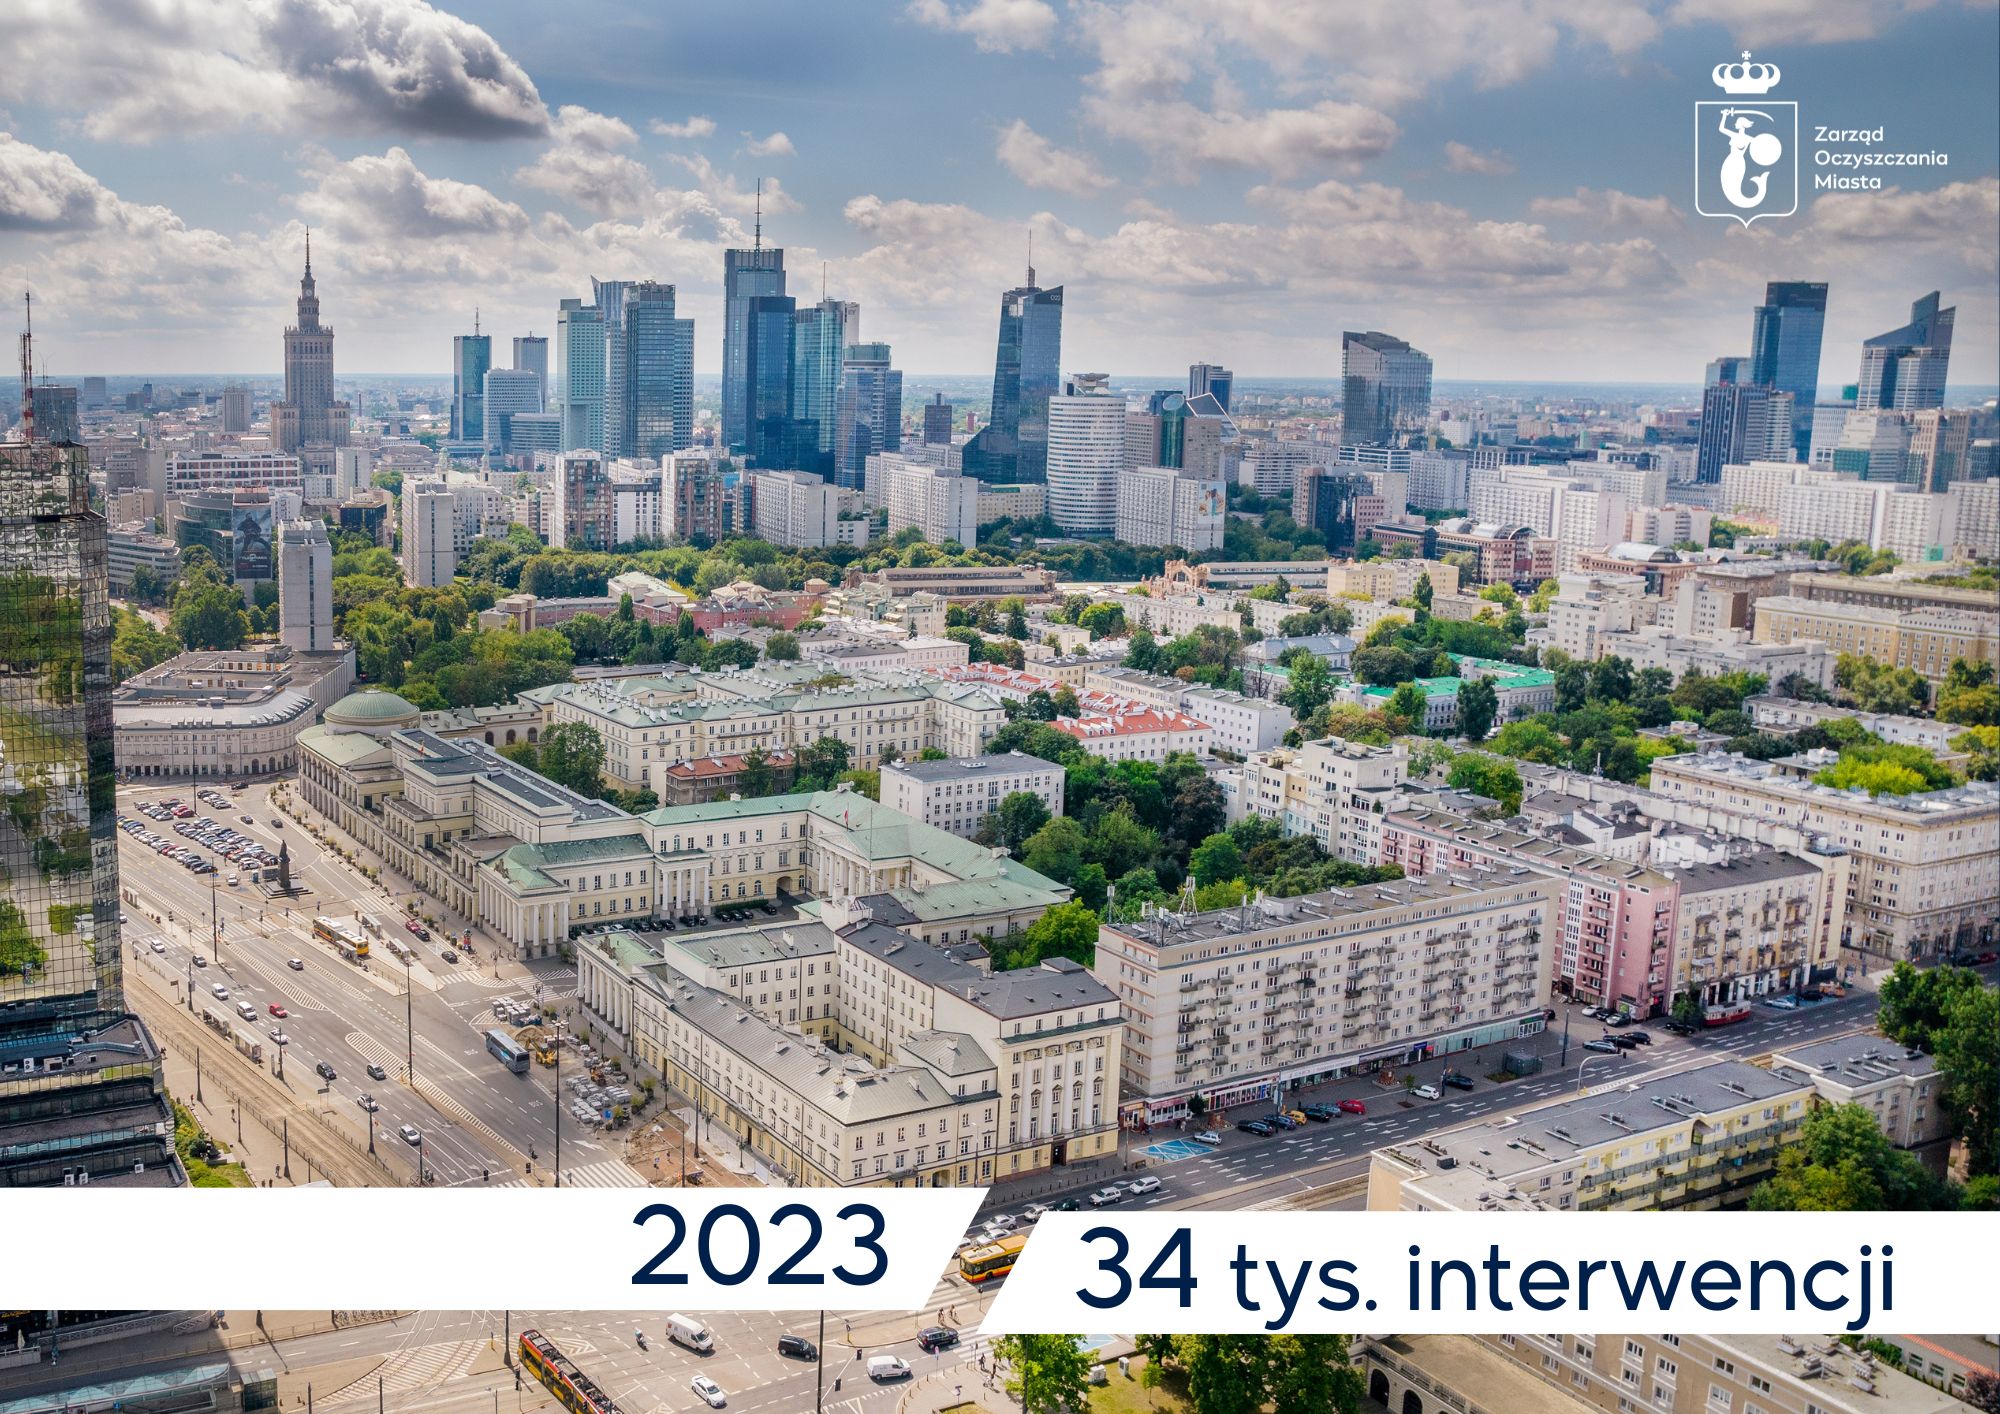 Zdjęcie Warszawy z lotu ptaka, po spodem napis - 2023, 34 tys. interwencji